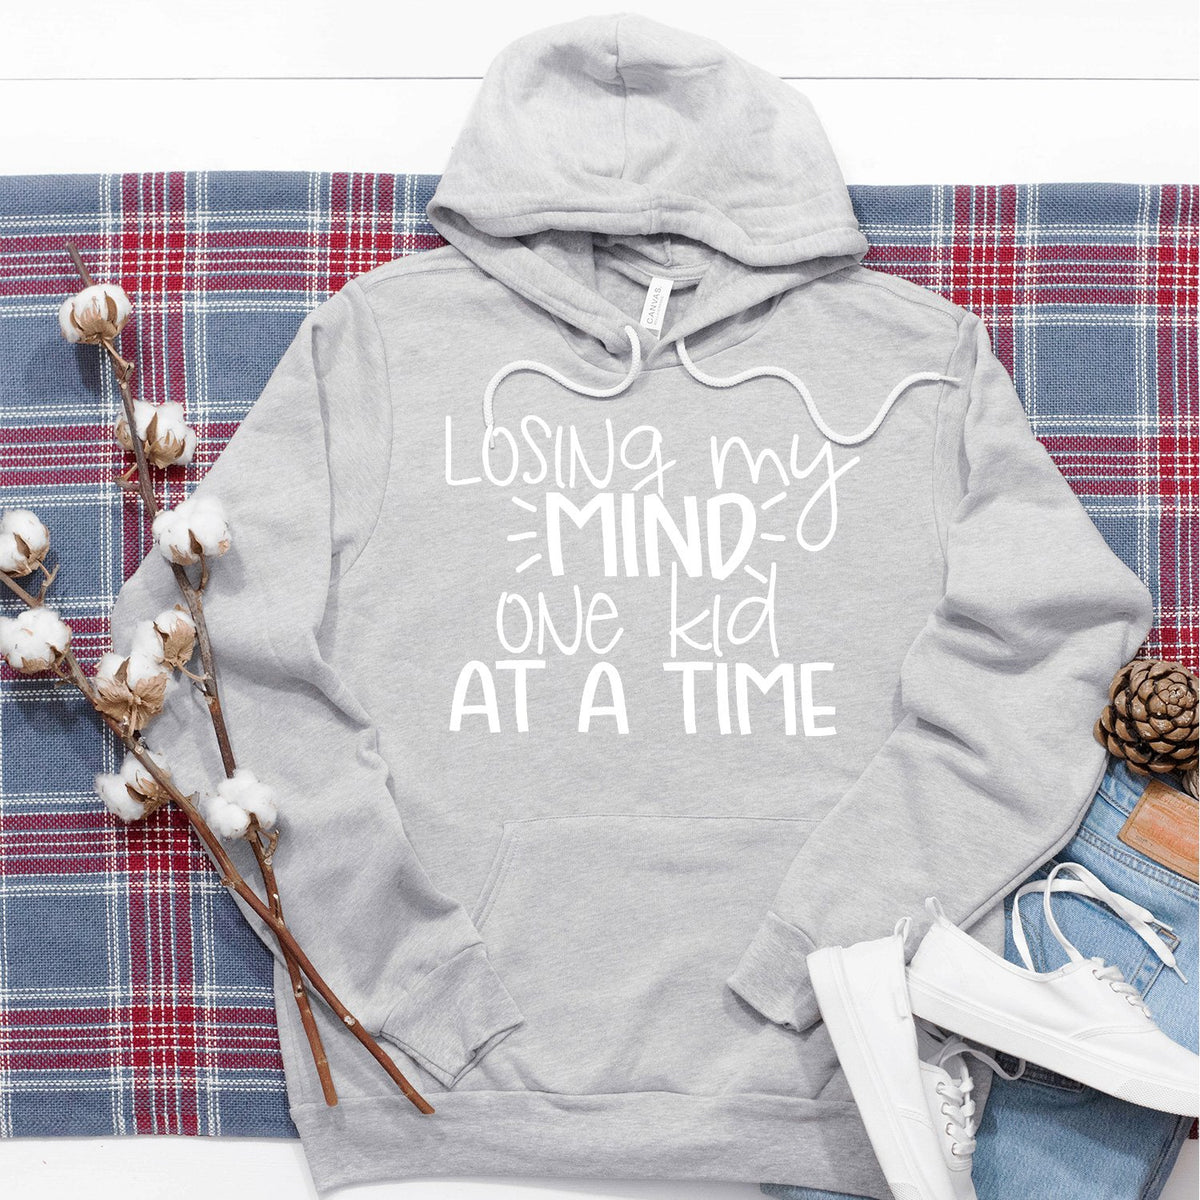 Losing My Mind One Kid At A Time - Hoodie Sweatshirt